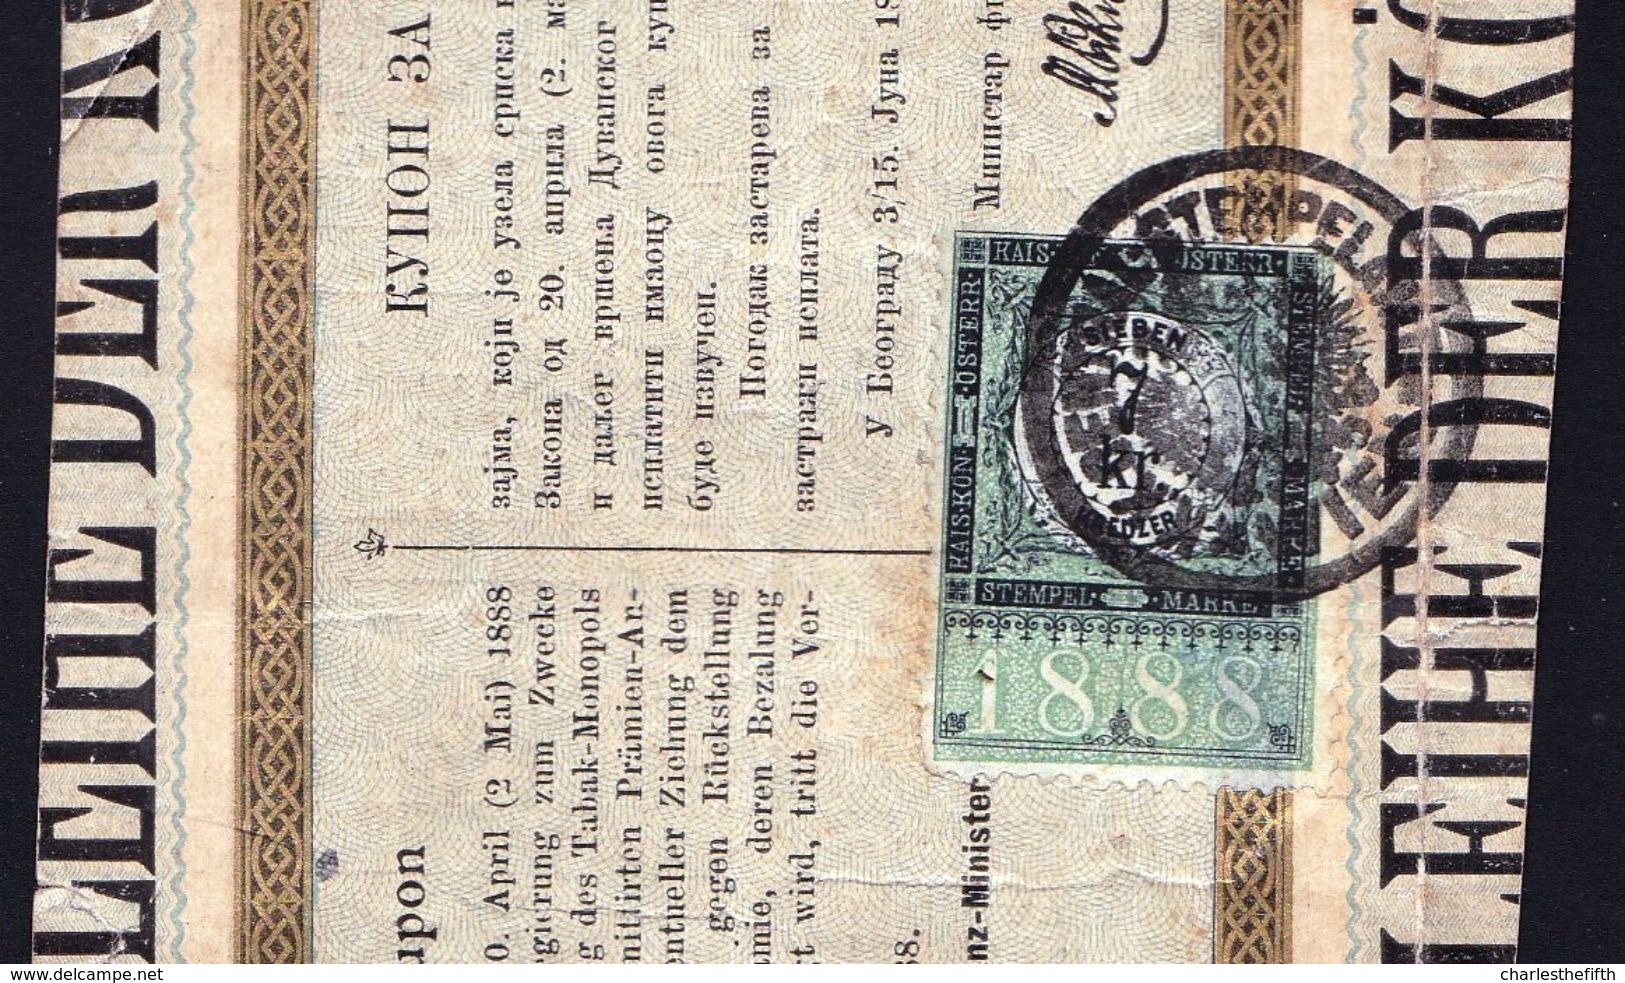 SELTEN ! 1888 - 7kr KAISERL. KON. OSTERR. STEMPEL MARKE Auf PRÄM ANLEIHE DER SERBISCHE REGIERUNG - 3 Scans - Revenue Stamps